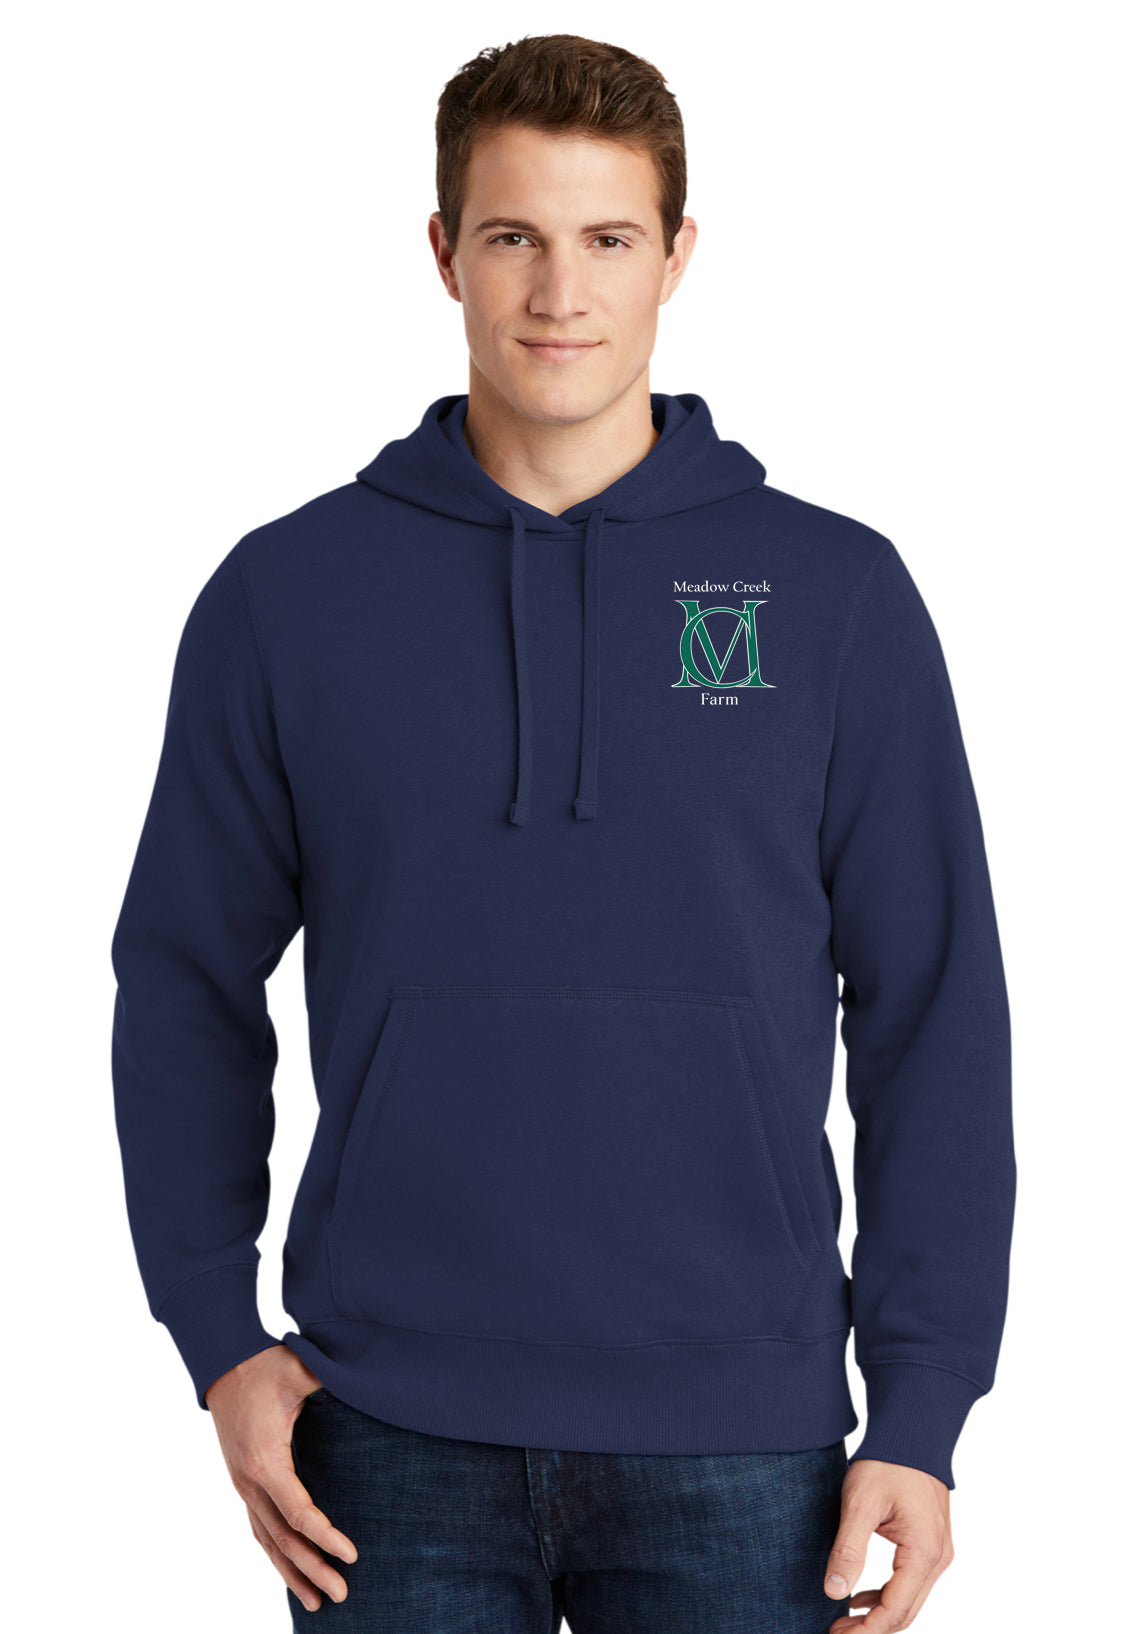 Meadow Creek Farm Sport-Tek®  Mens Hooded Sweatshirt